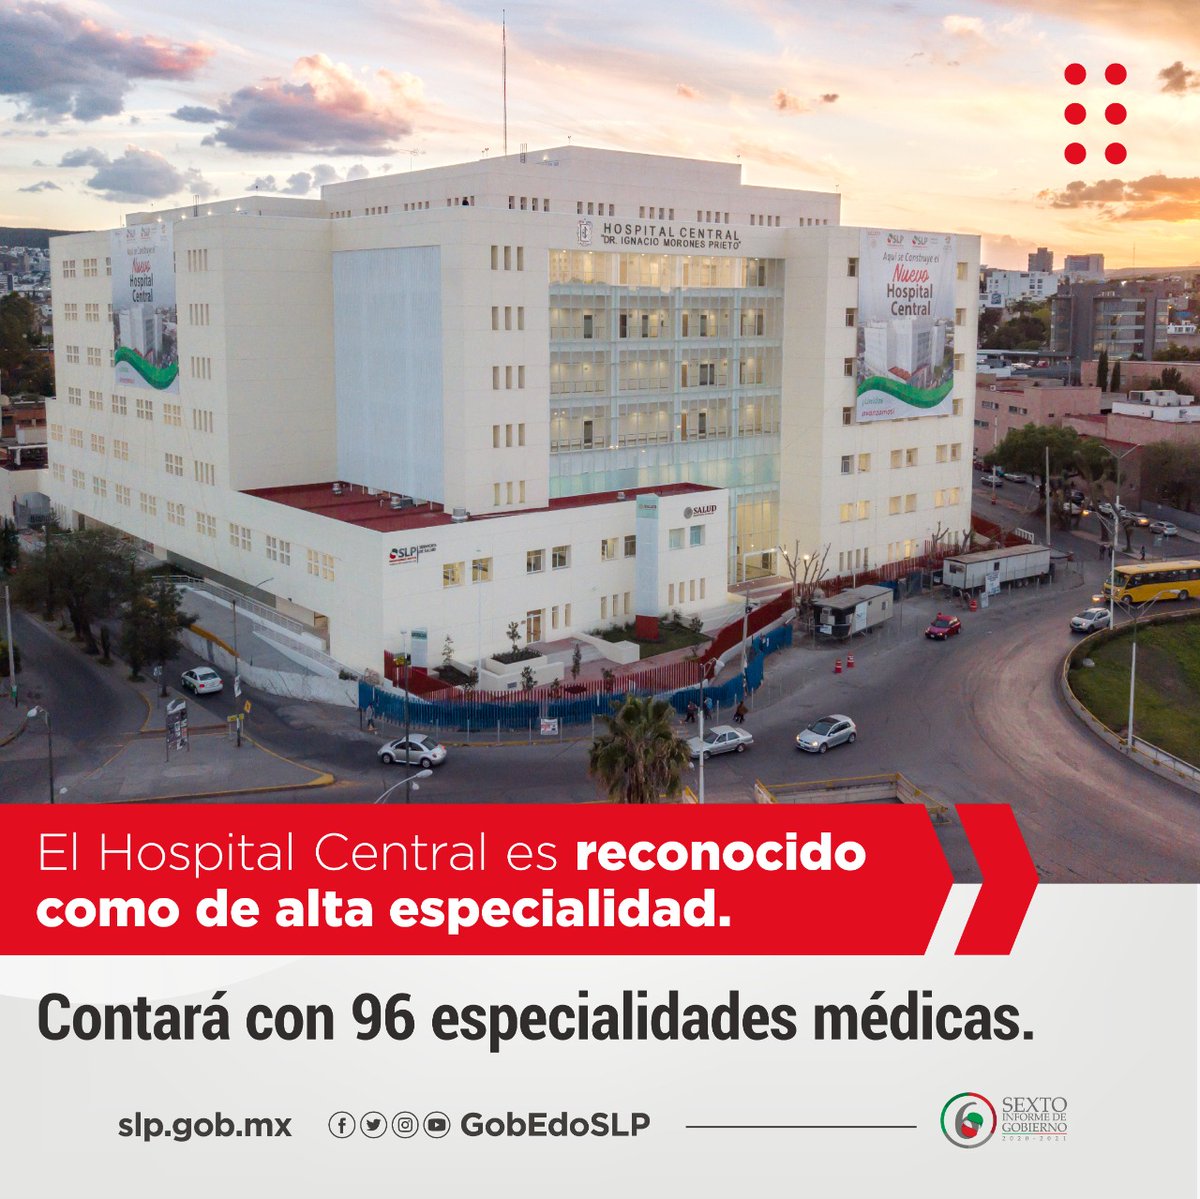 Fortalecimos la infraestructura de los Servicios de Salud modernizando el Hospital Central, el cual hoy es reconocido como de Alta Especialidad.
#InformeJMCarreras